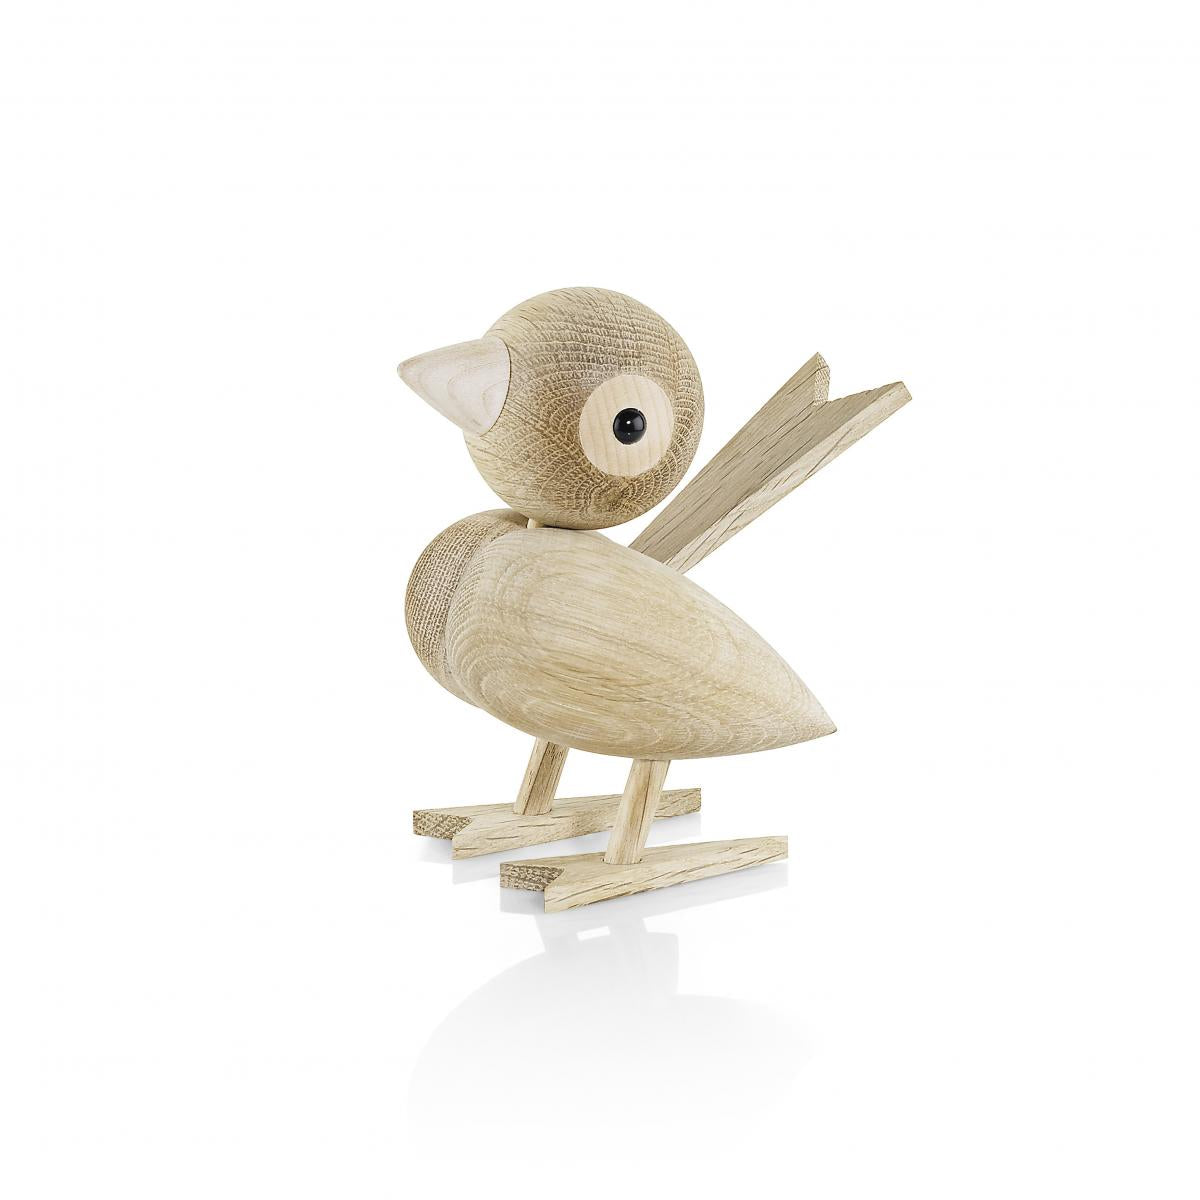 Gunnar Florning Sparrow bird for Lucie Kaas -3 sizes